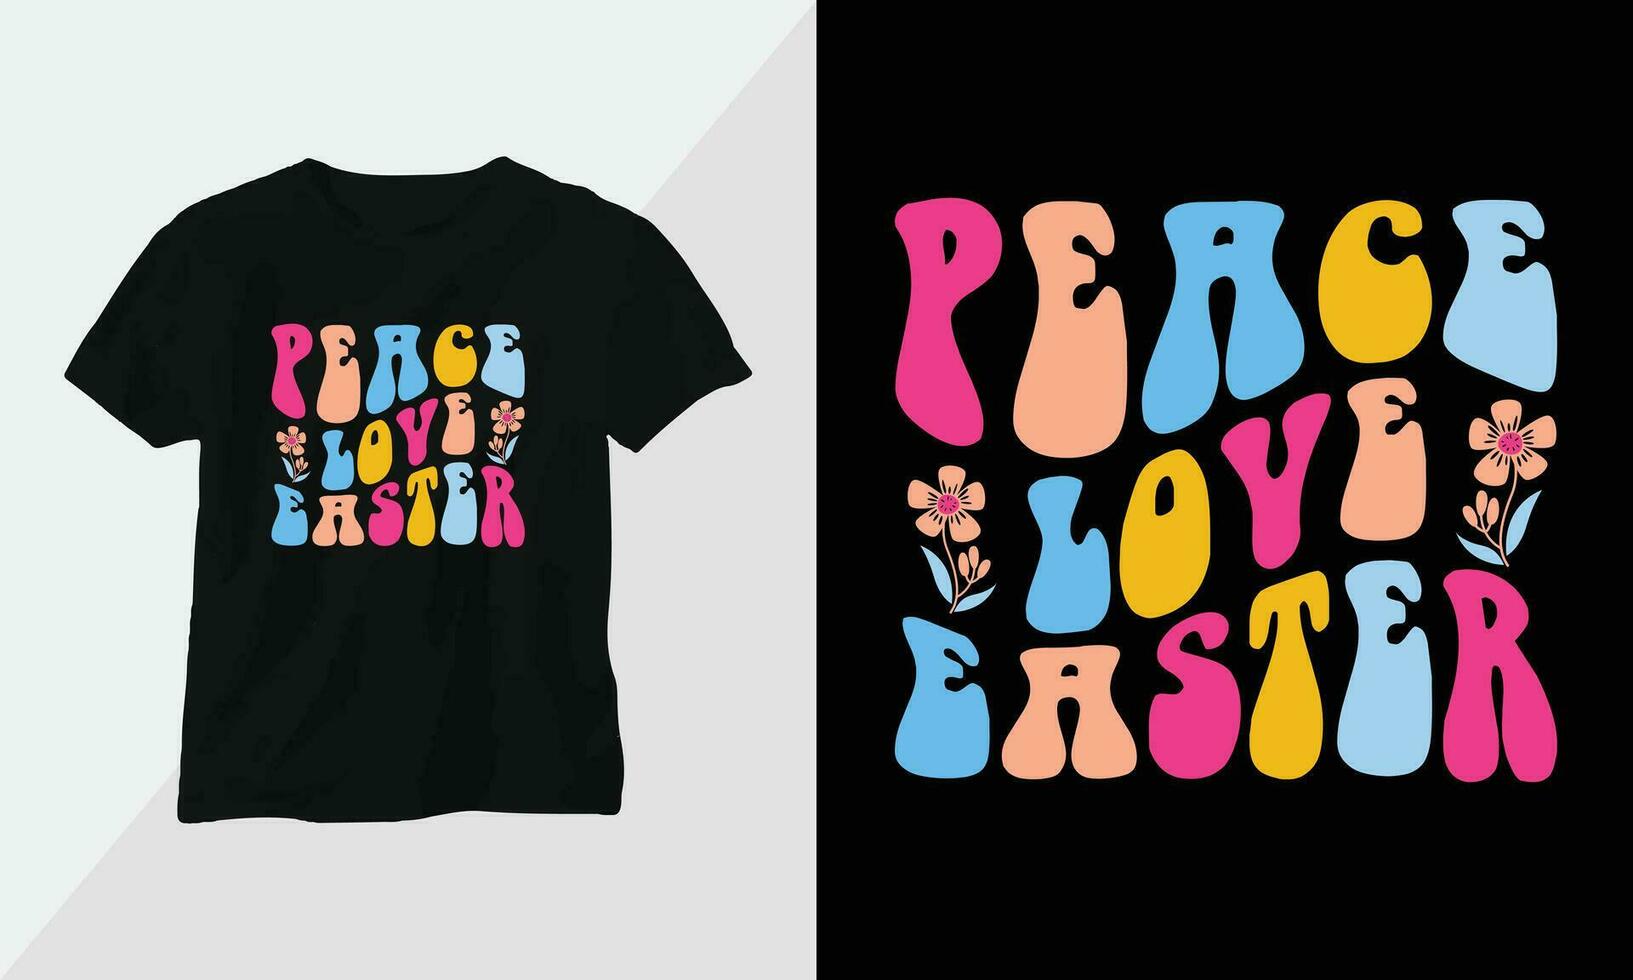 vrede liefde Pasen - retro groovy inspirerend t-shirt ontwerp met retro stijl vector